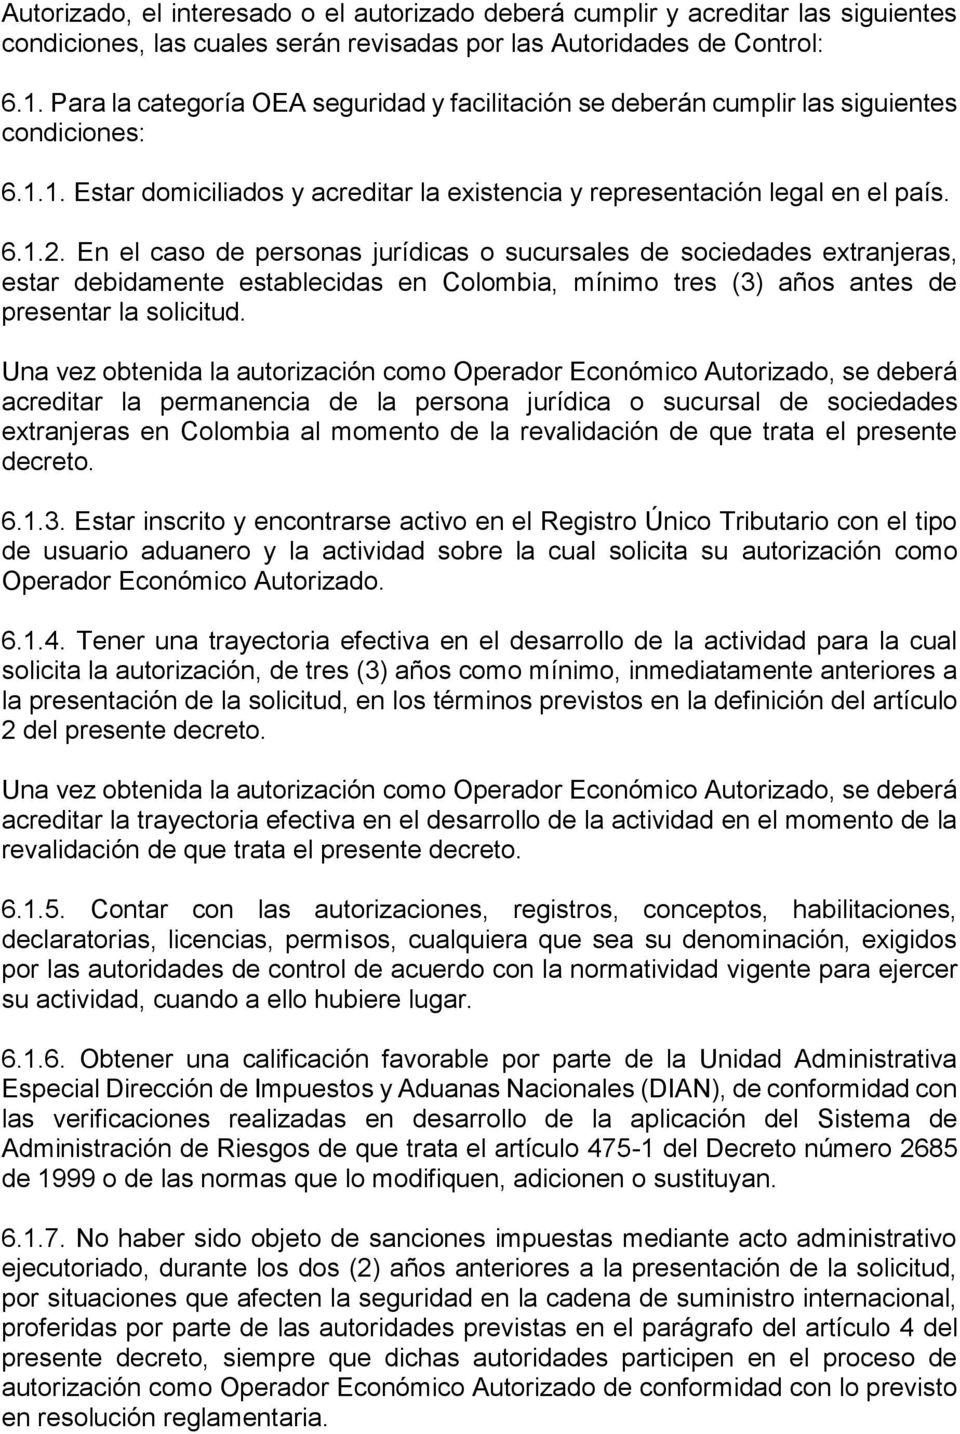 En el caso de personas jurídicas o sucursales de sociedades extranjeras, estar debidamente establecidas en Colombia, mínimo tres (3) años antes de presentar la solicitud.